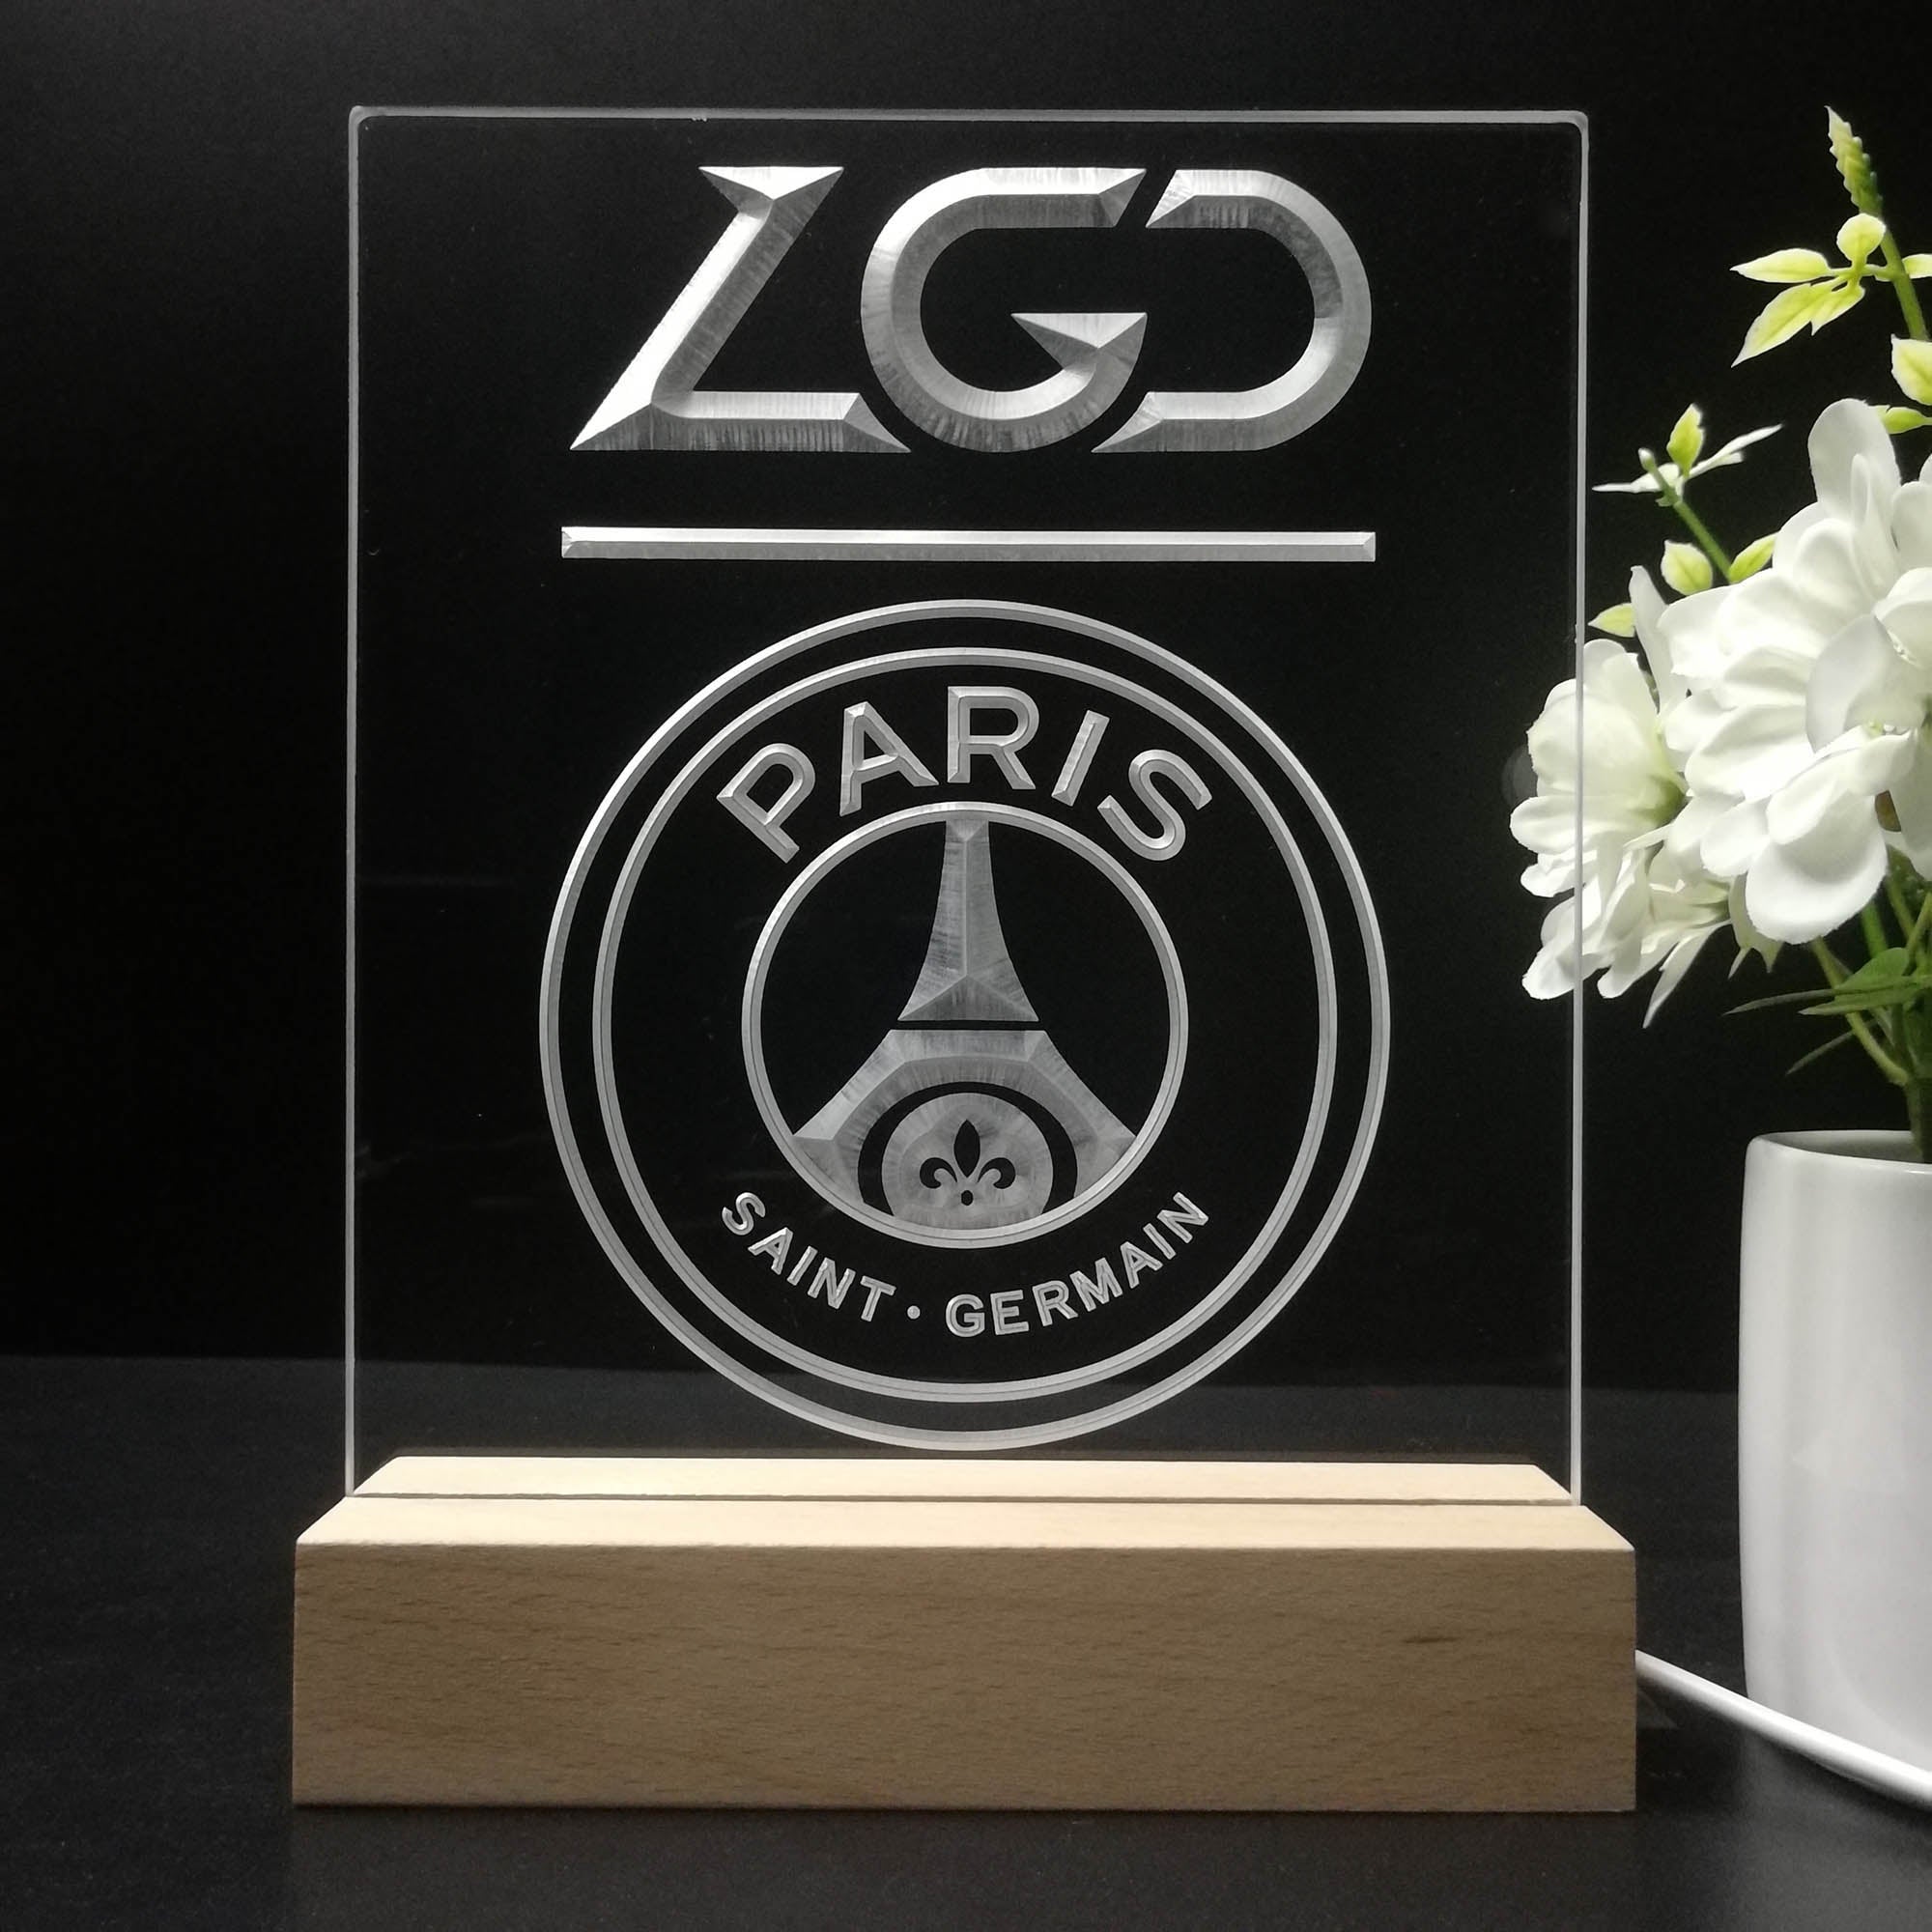 LGD Paris Saint-Germain Neon Sign Table Lamp Display